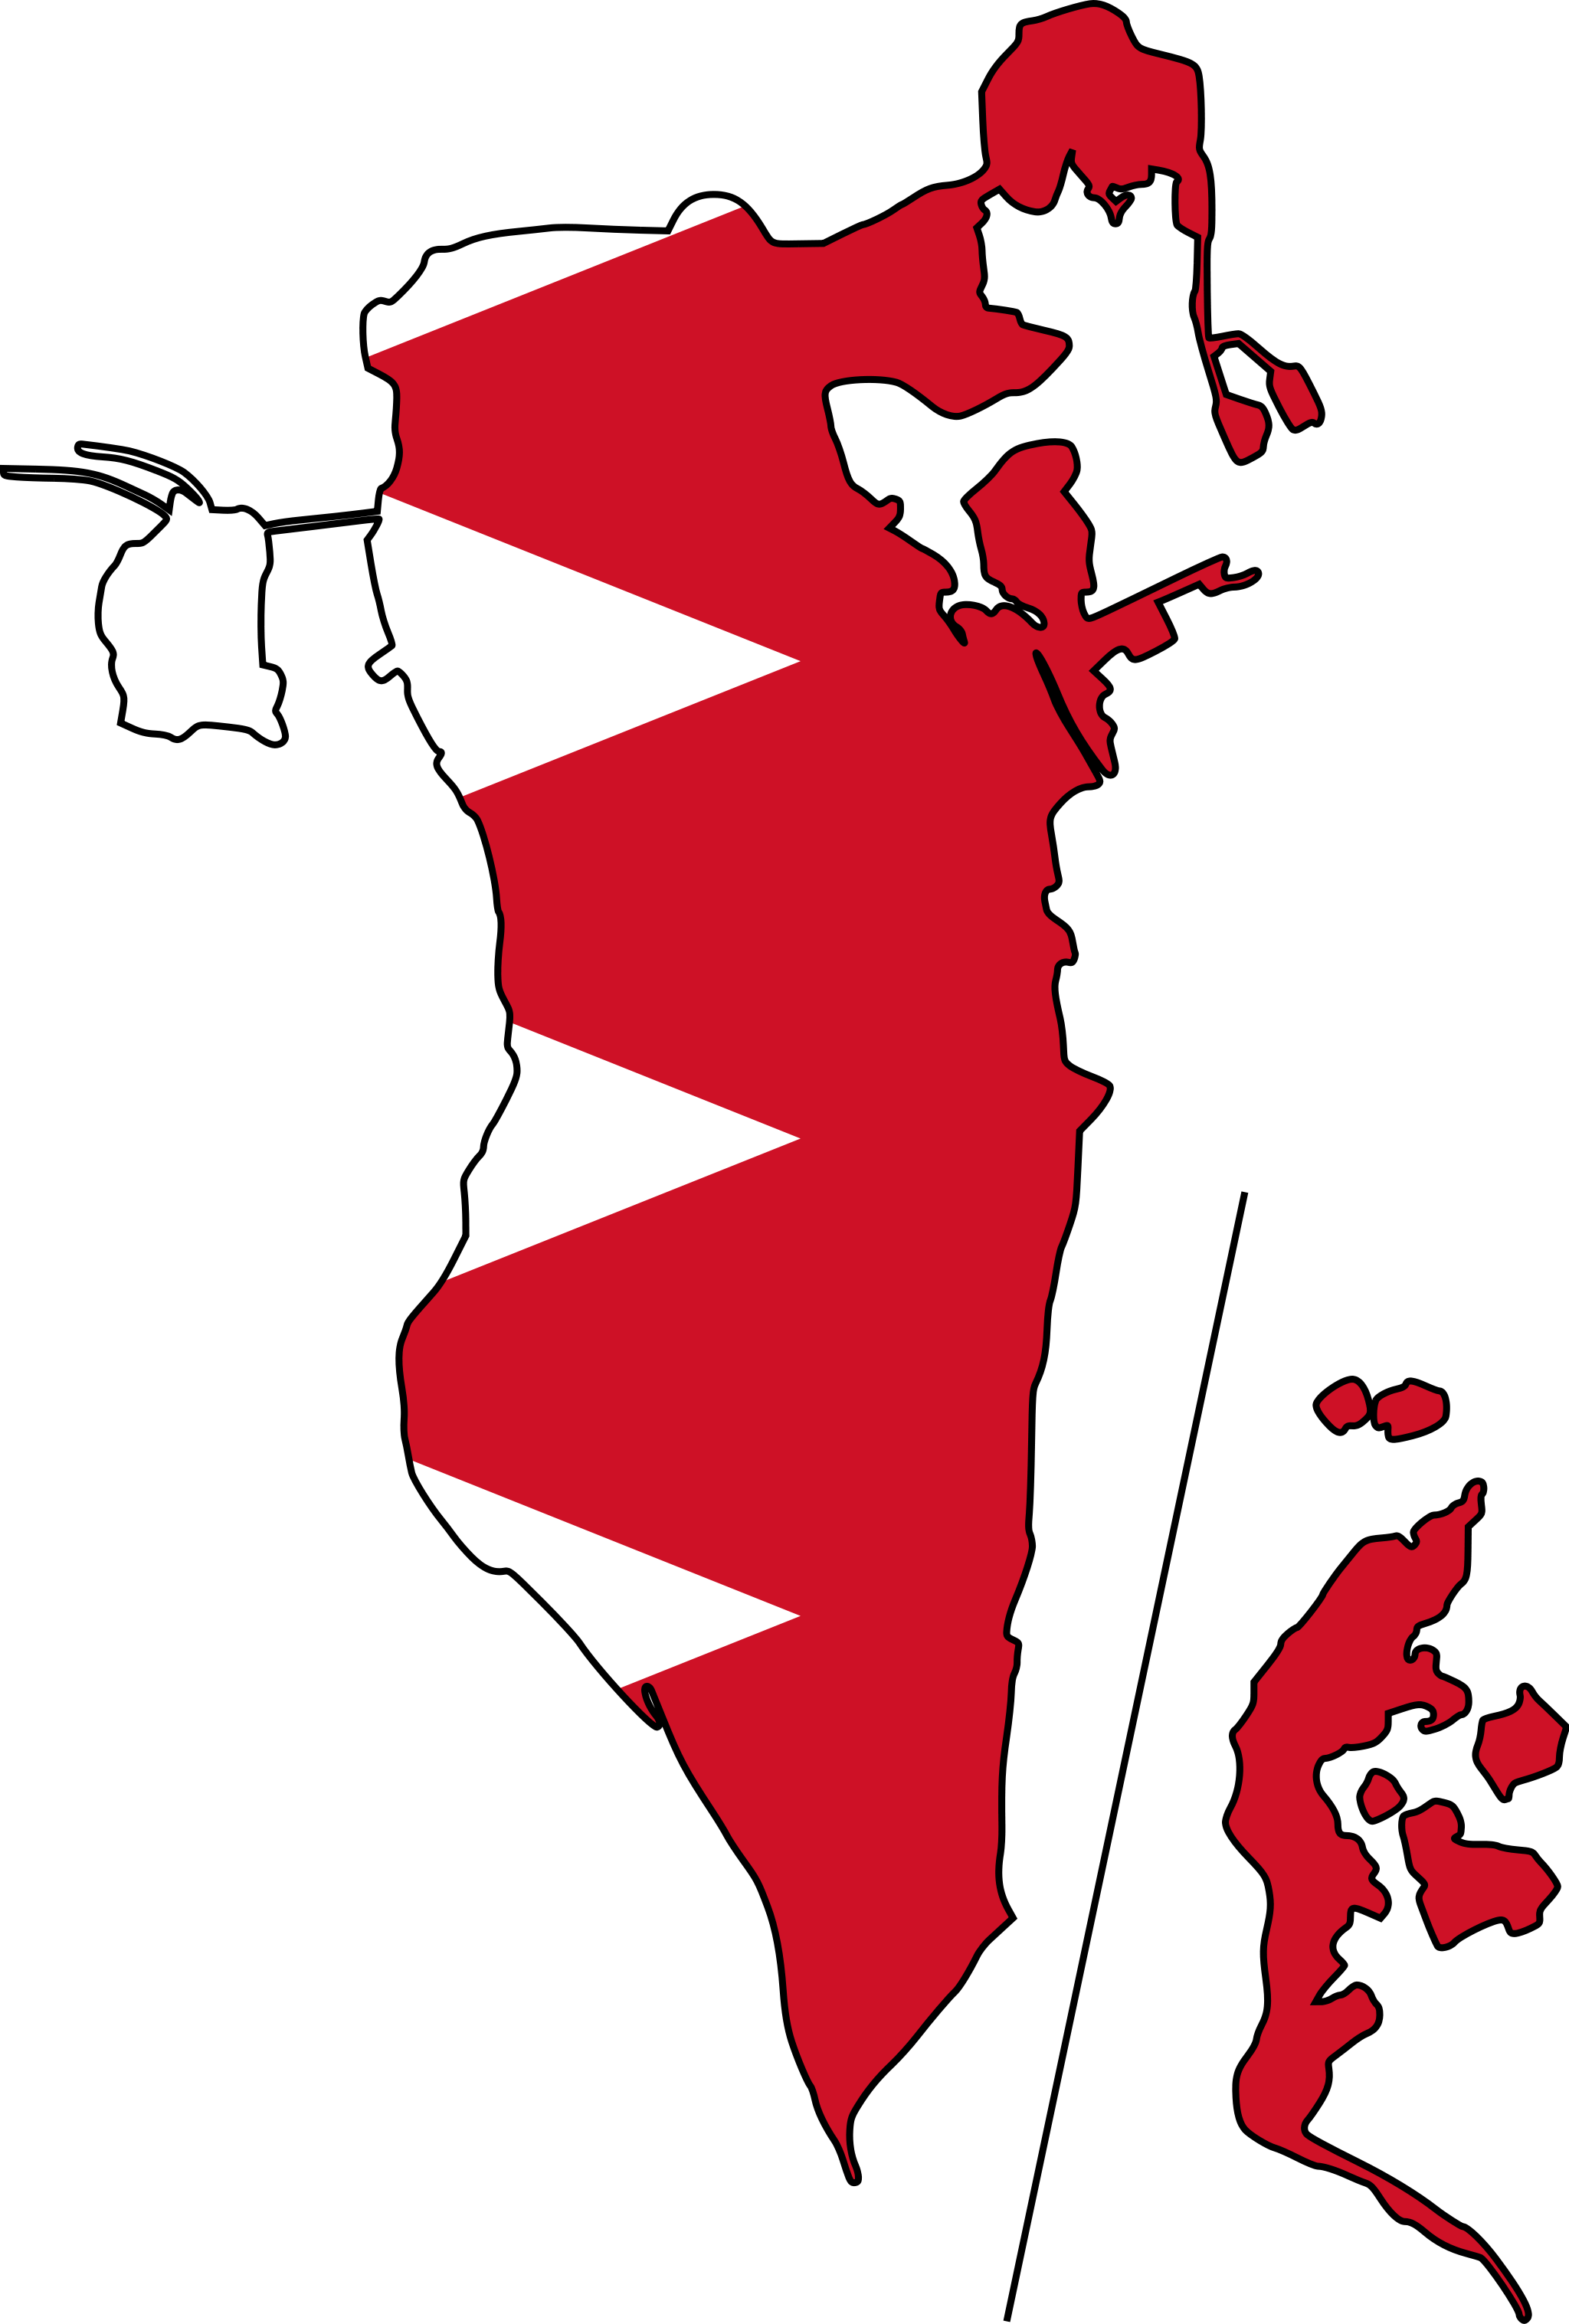 bahrain, bh, flag icon